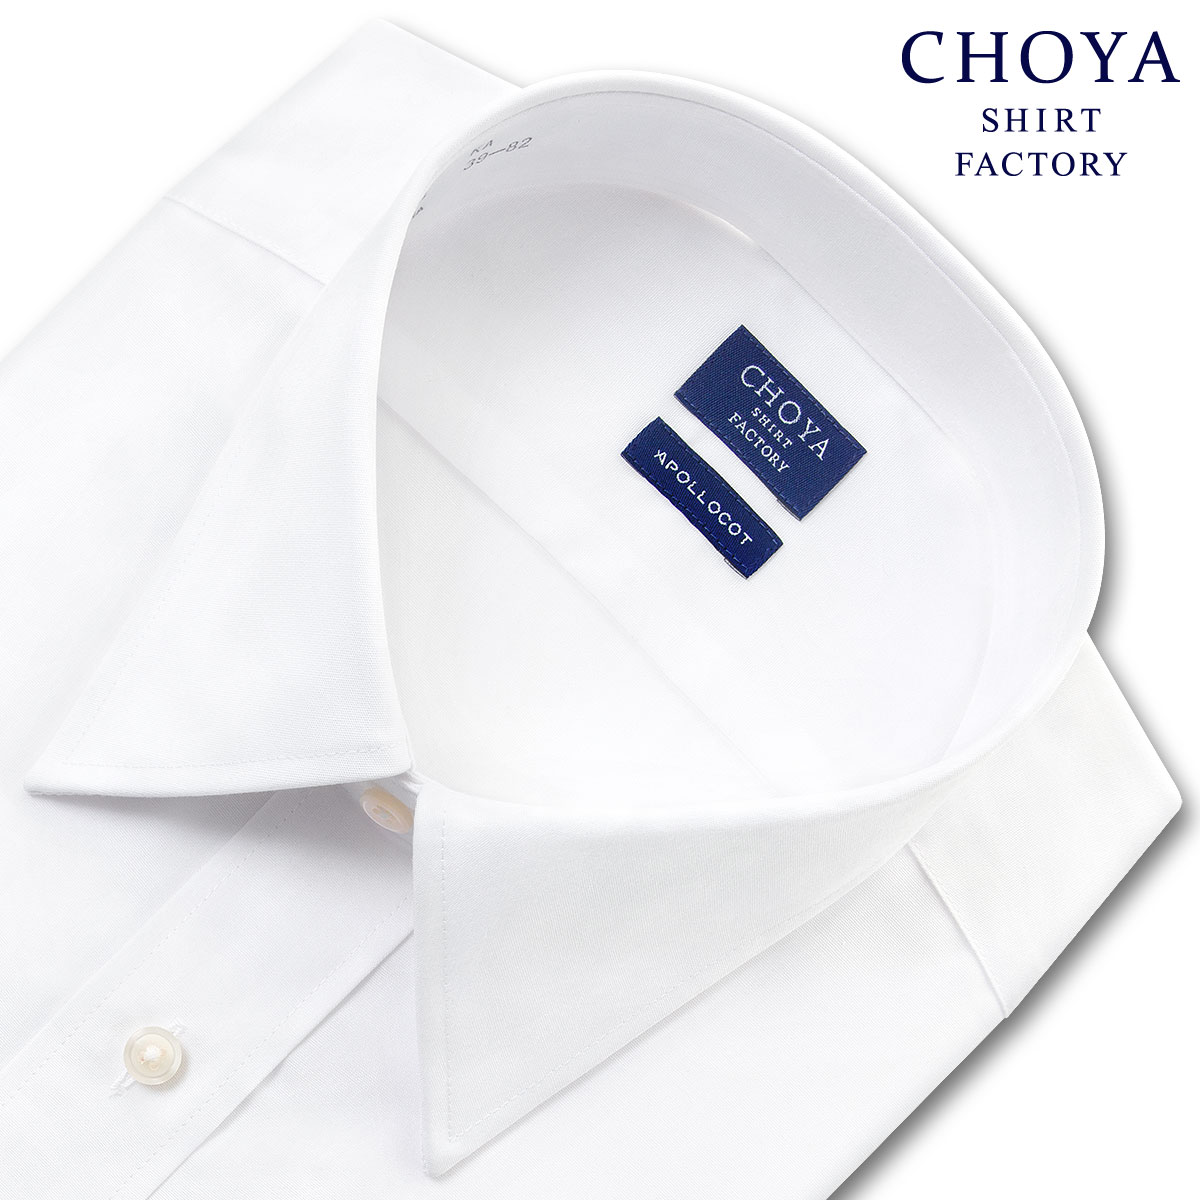 ワイシャツ CHOYA Yシャツ 日清紡アポロコット チョーヤシャツ メンズ 長袖ドレスシャツ 綿100% 形態安定 ホワイト 白ブロード レギュラーカラー 高級 上質 CHOYA SHIRT FAC